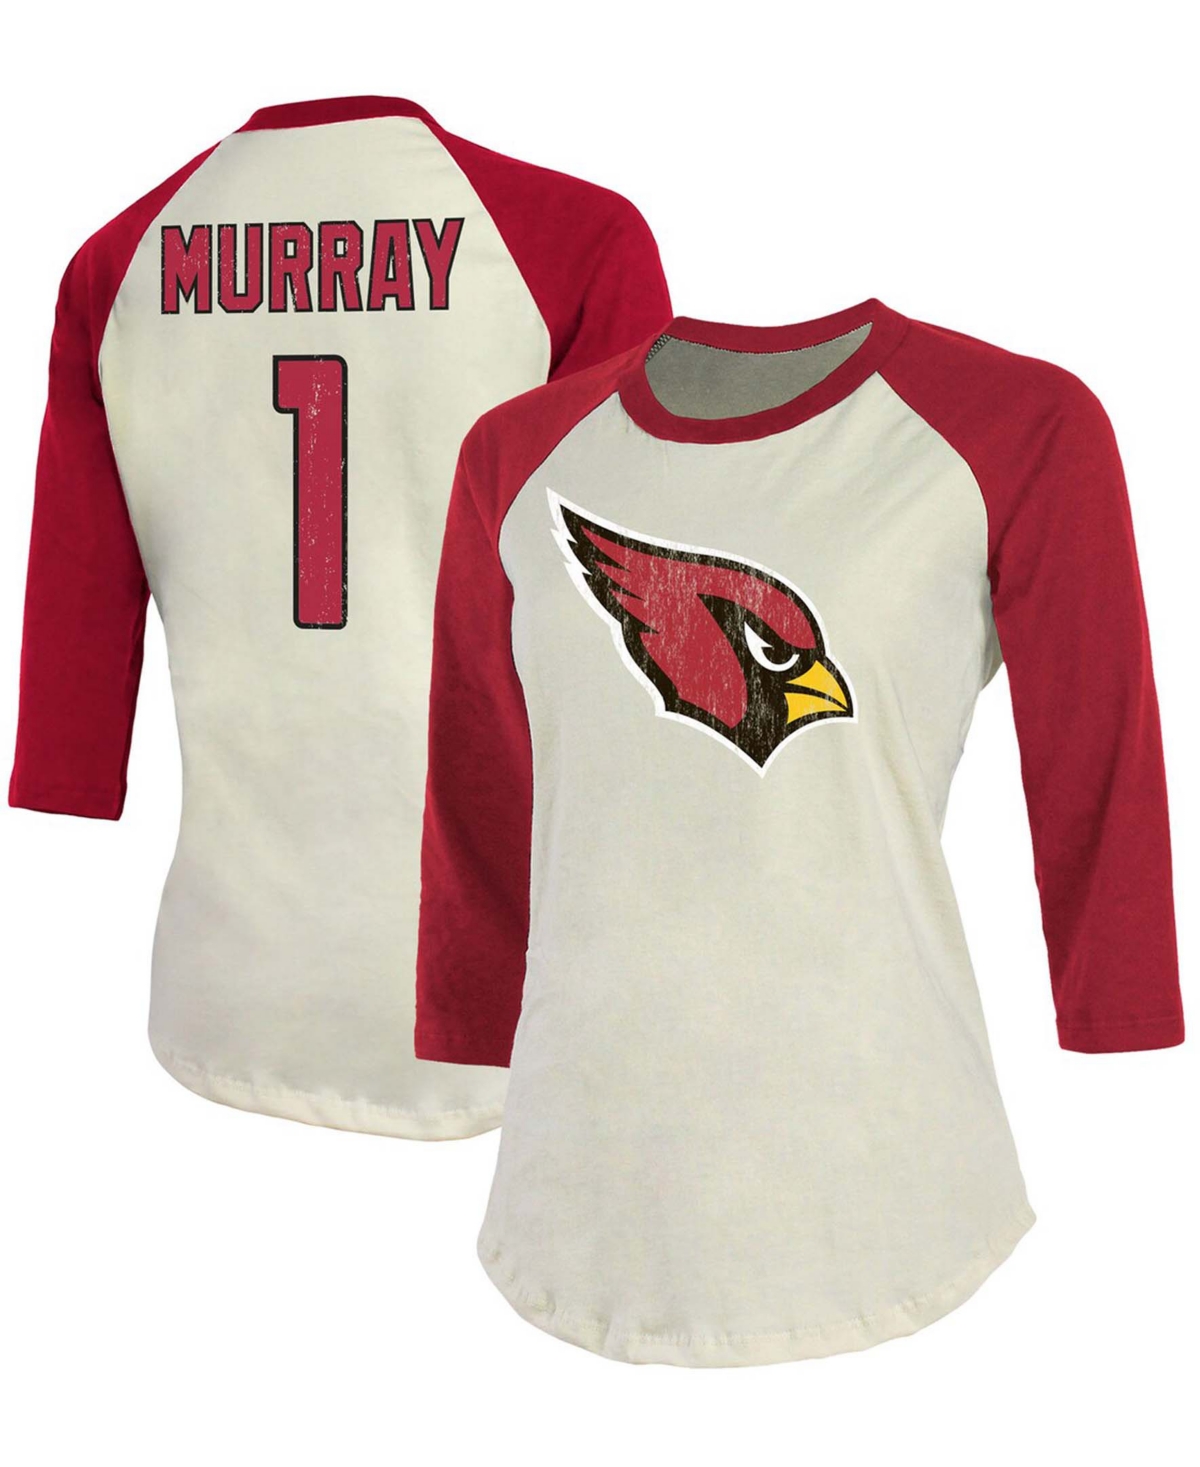 Women's Kyler Murray Cream, Cardinal Arizona Cardinals Player Raglan Name Number 3/4 Sleeve T-shirt - Cream, Cardinal